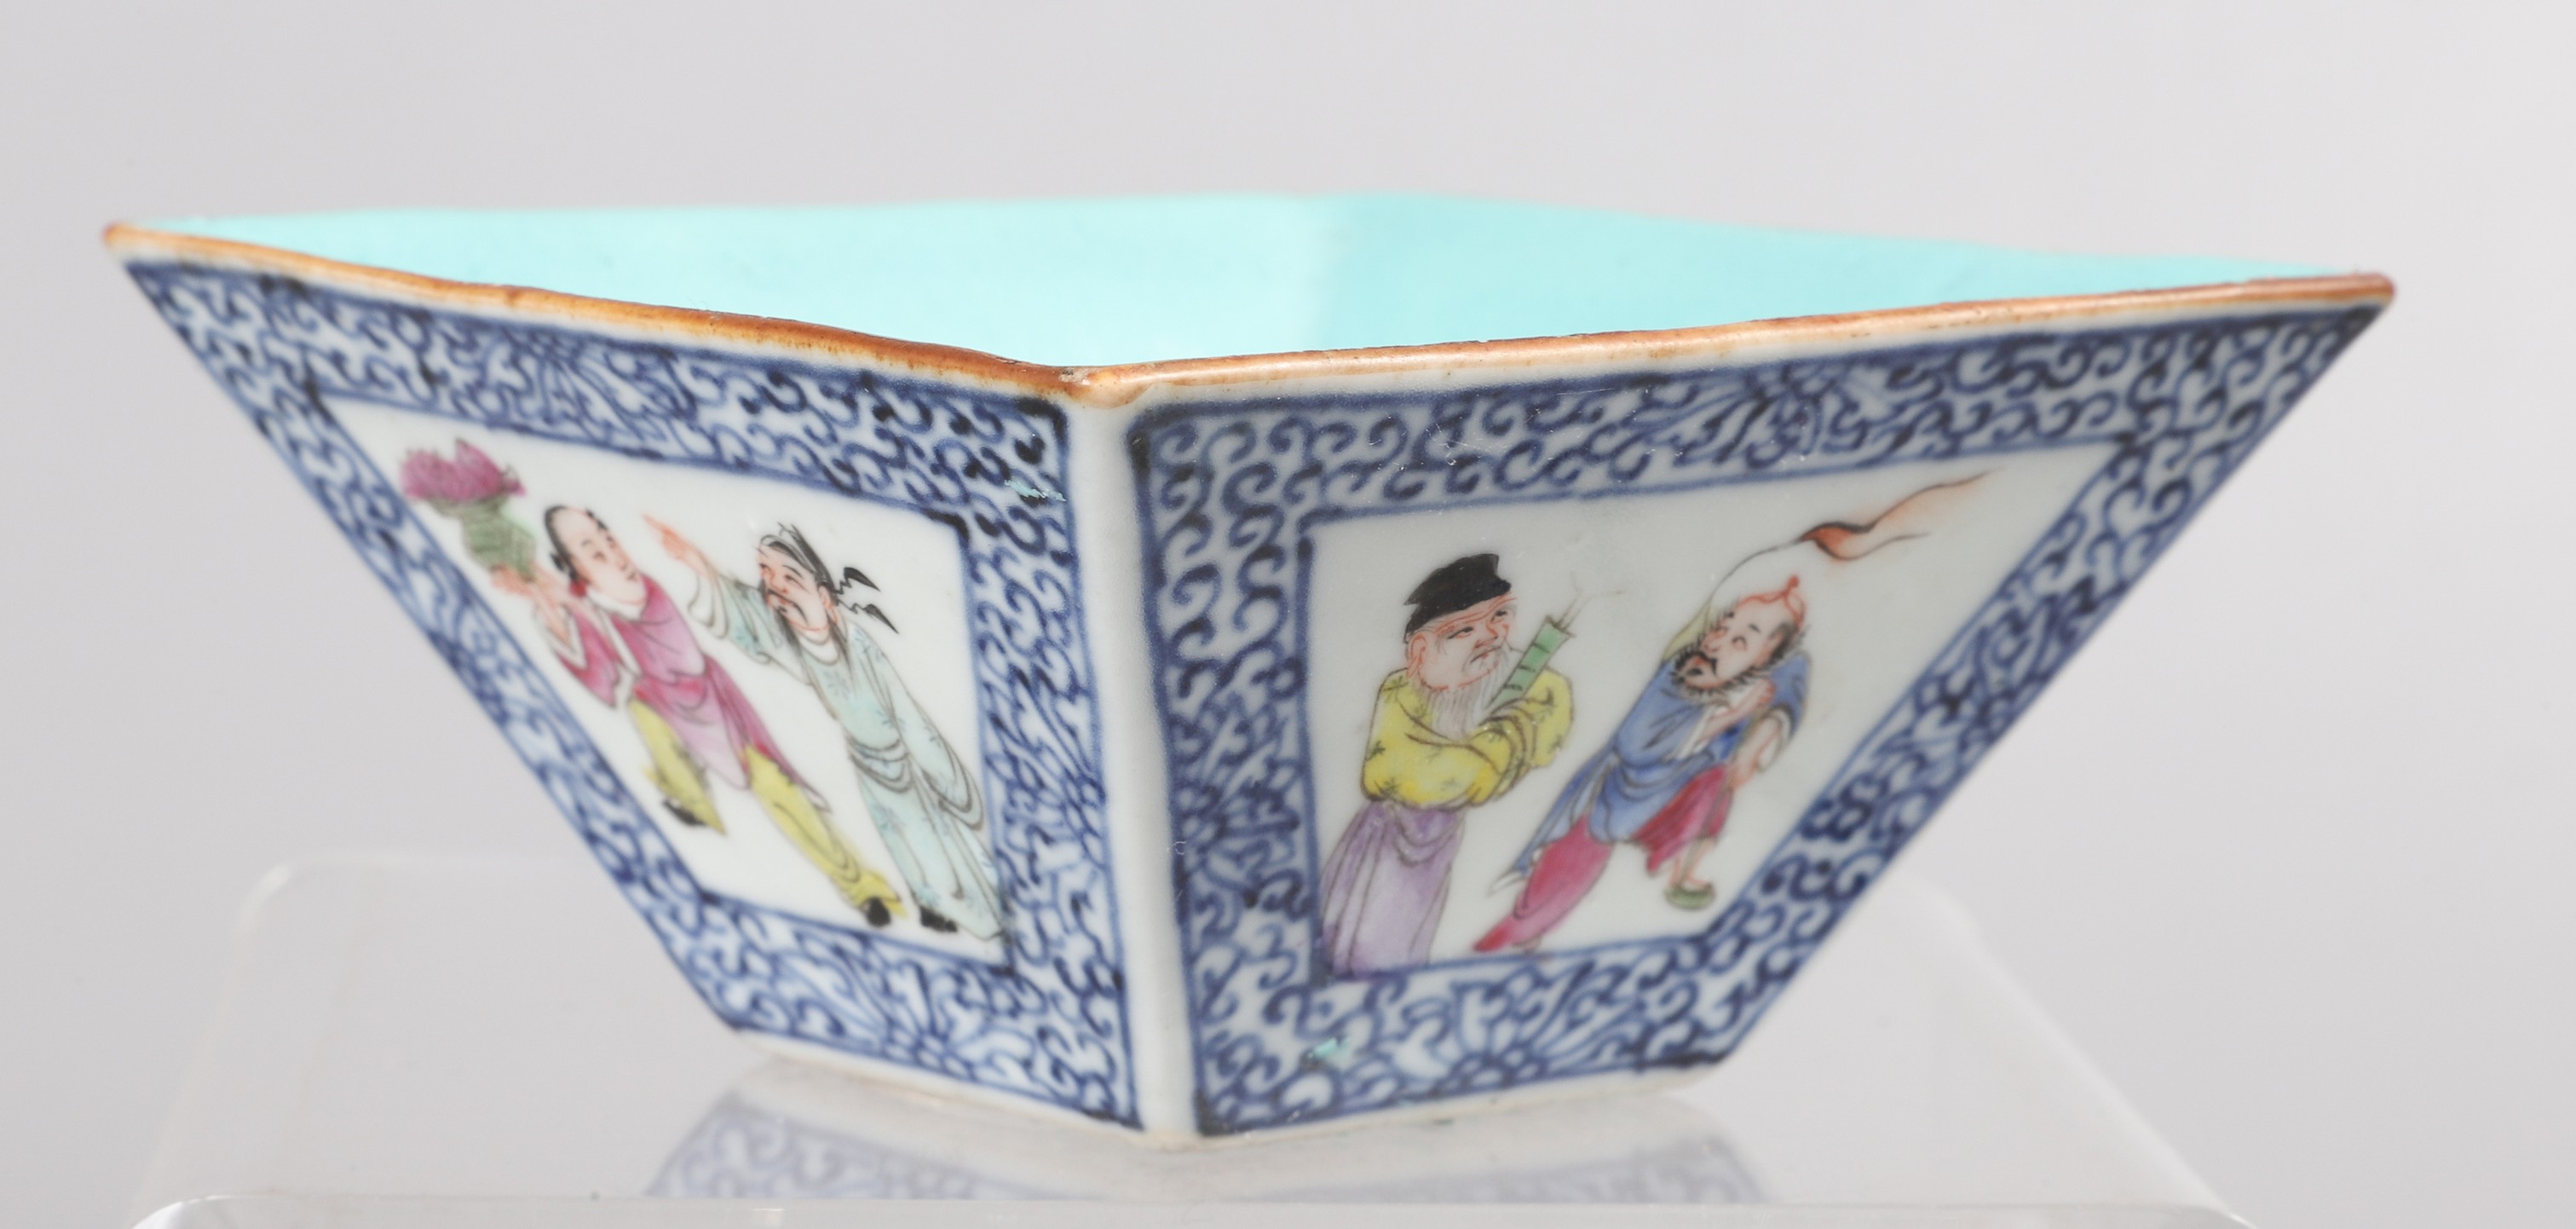 Chinese porcelain square bowl  2e089f